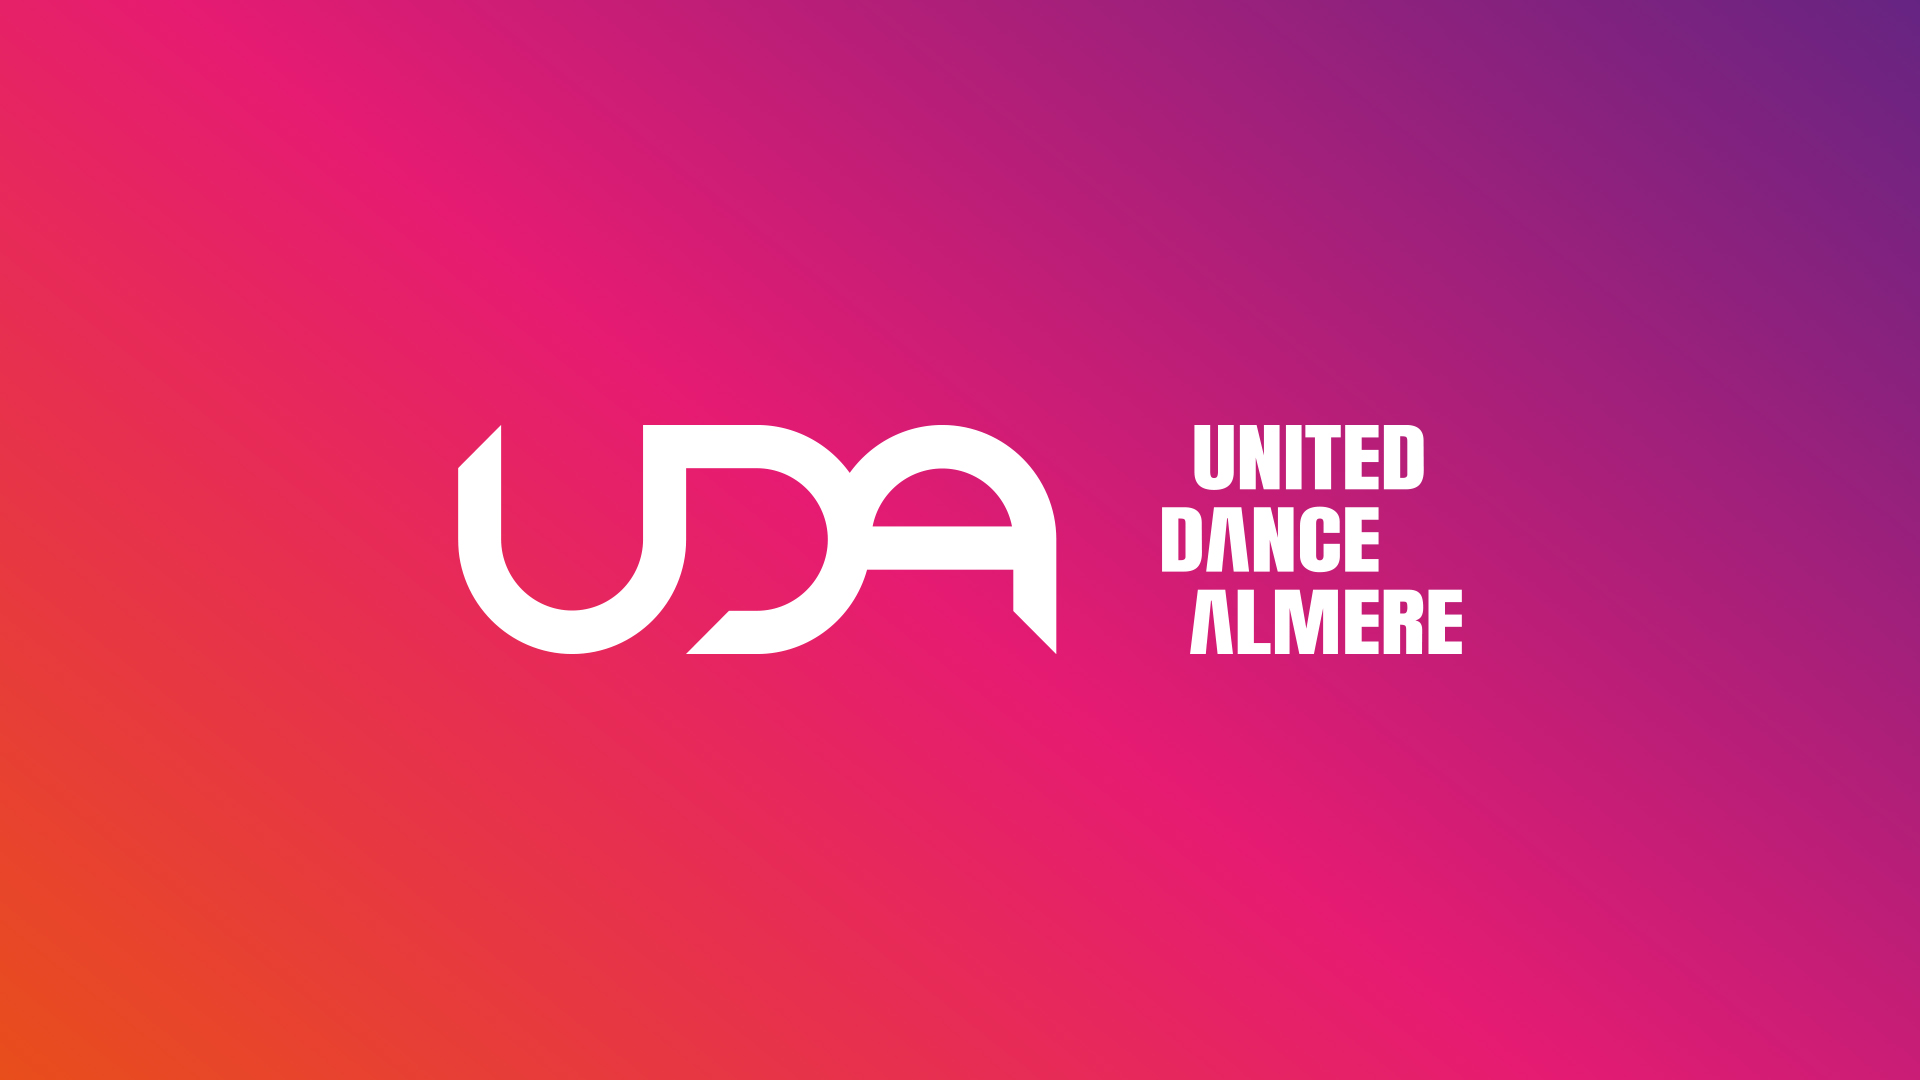 untited-dance-almere-create-the-brand-8